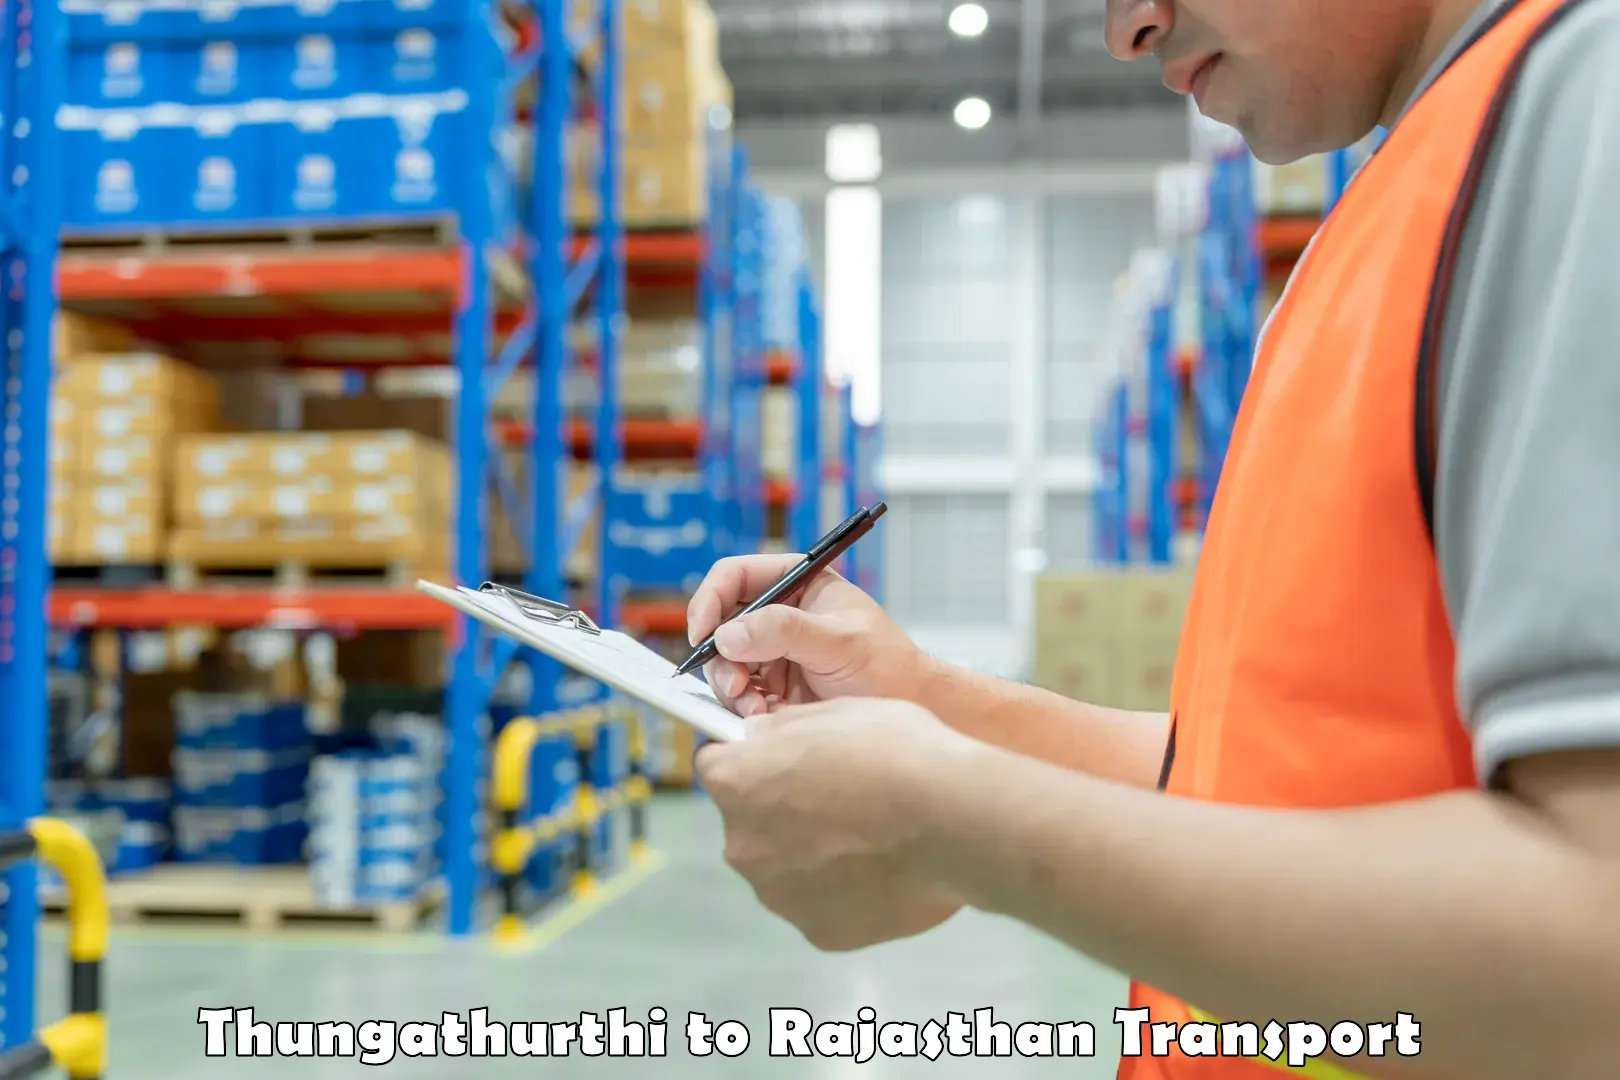 Cargo transportation services Thungathurthi to Laxmangarh